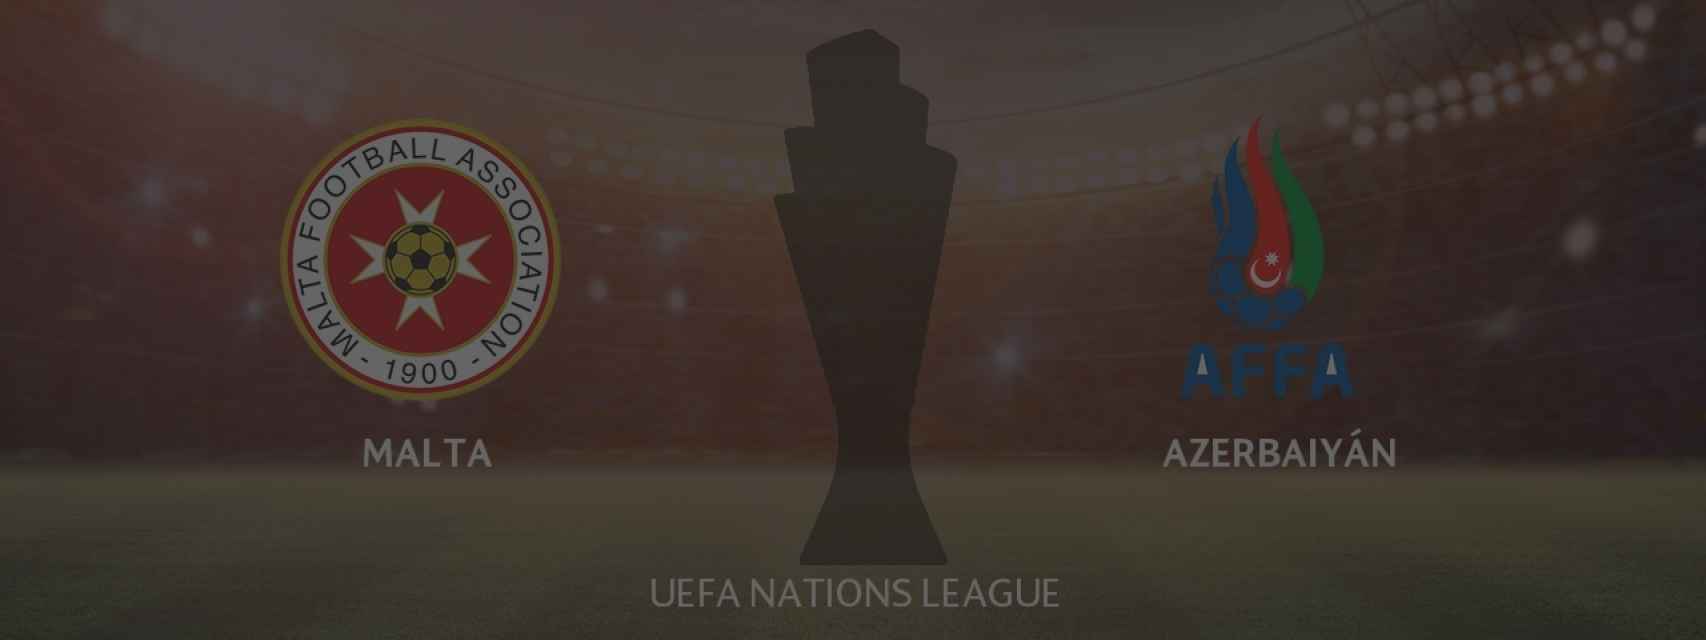 Malta - Azerbaiyán, UEFA Nations League